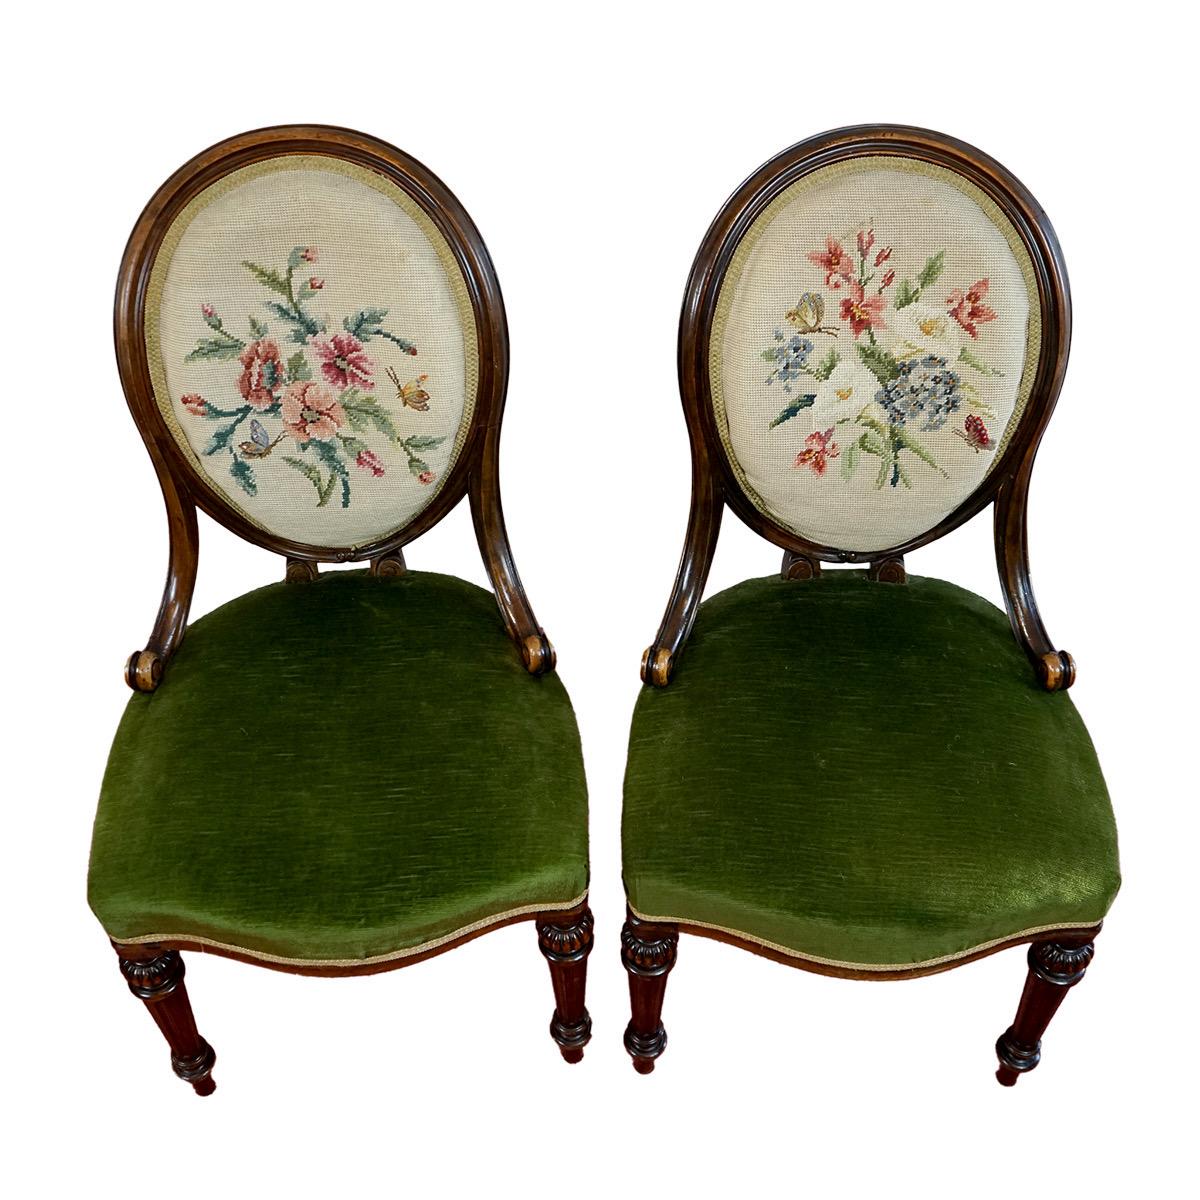 Zu verkaufen eine Reihe von vier viktorianischen Nussbaum gerahmt Esszimmerstühle  von Gillow of Lancaster, auf kannelierten, spitz zulaufenden Beinen, mit Herstellermarken auf den Sitzschienen. Laut Wikipedia wurden die Stempel auf den Stühlen